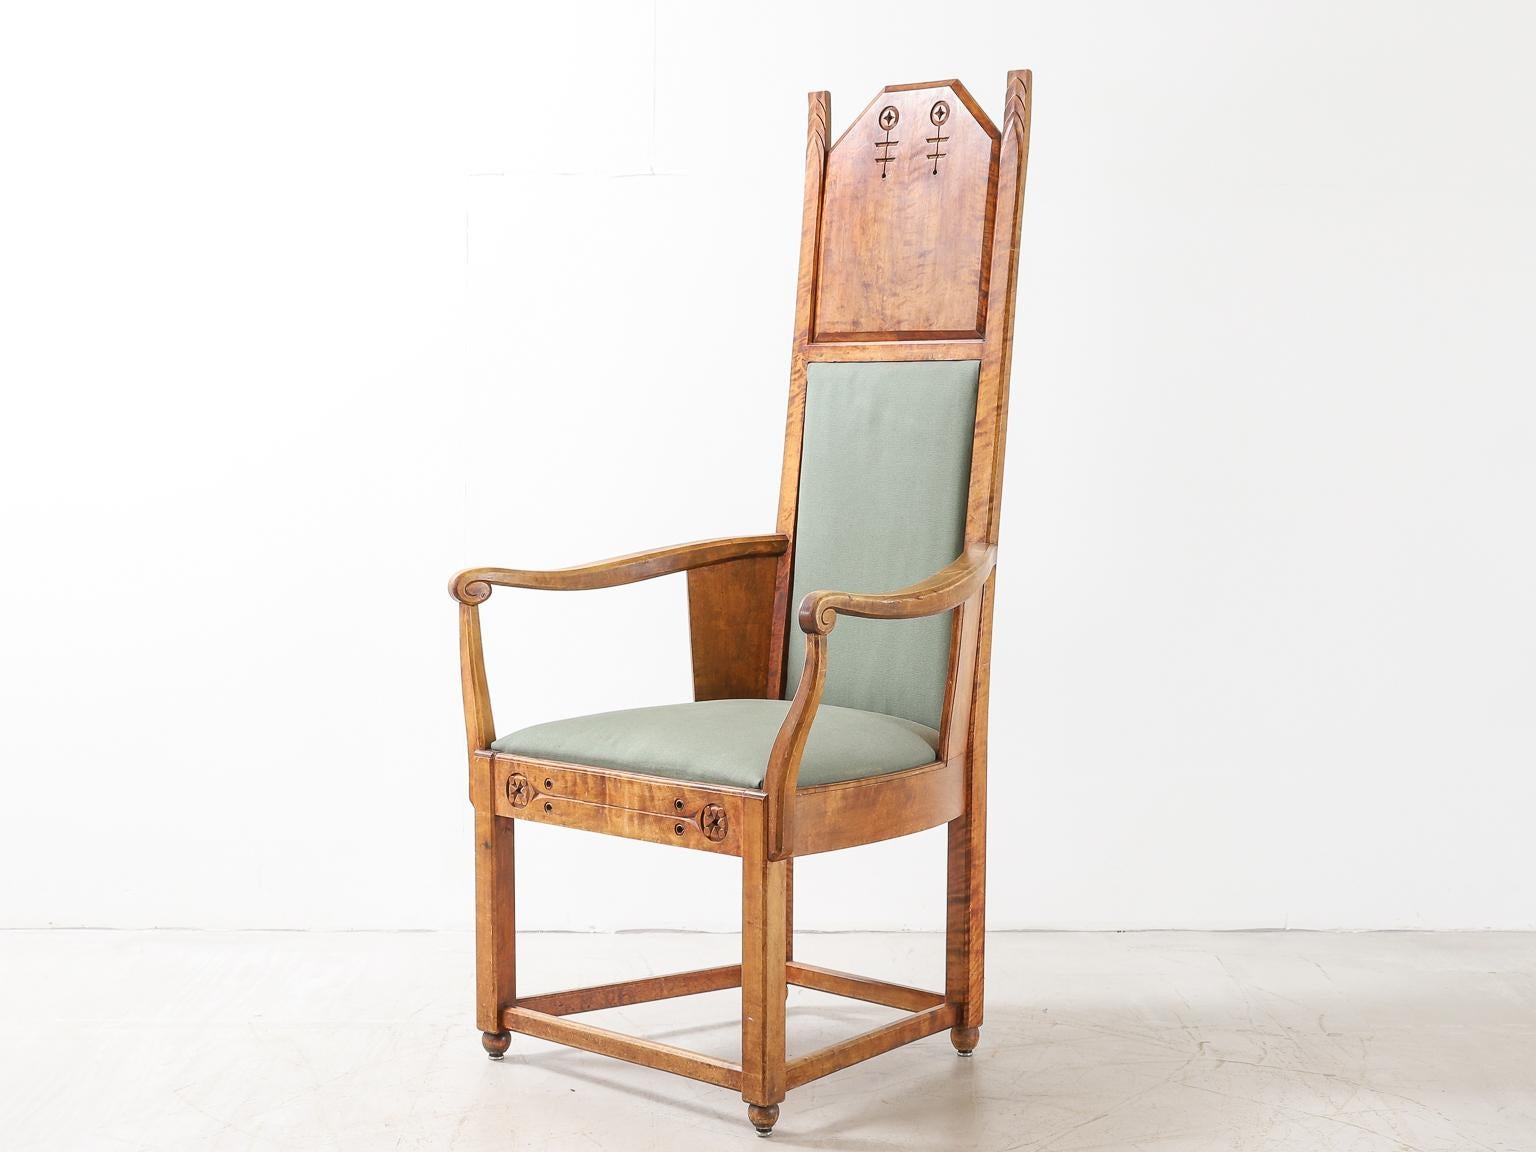 Un fauteuil Arts & Crafts de forme architecturale conçu par Lars Israël Wahlman, l'un des principaux architectes et designers suédois du début du XXe siècle. Il a travaillé dans ce que l'on a appelé le 